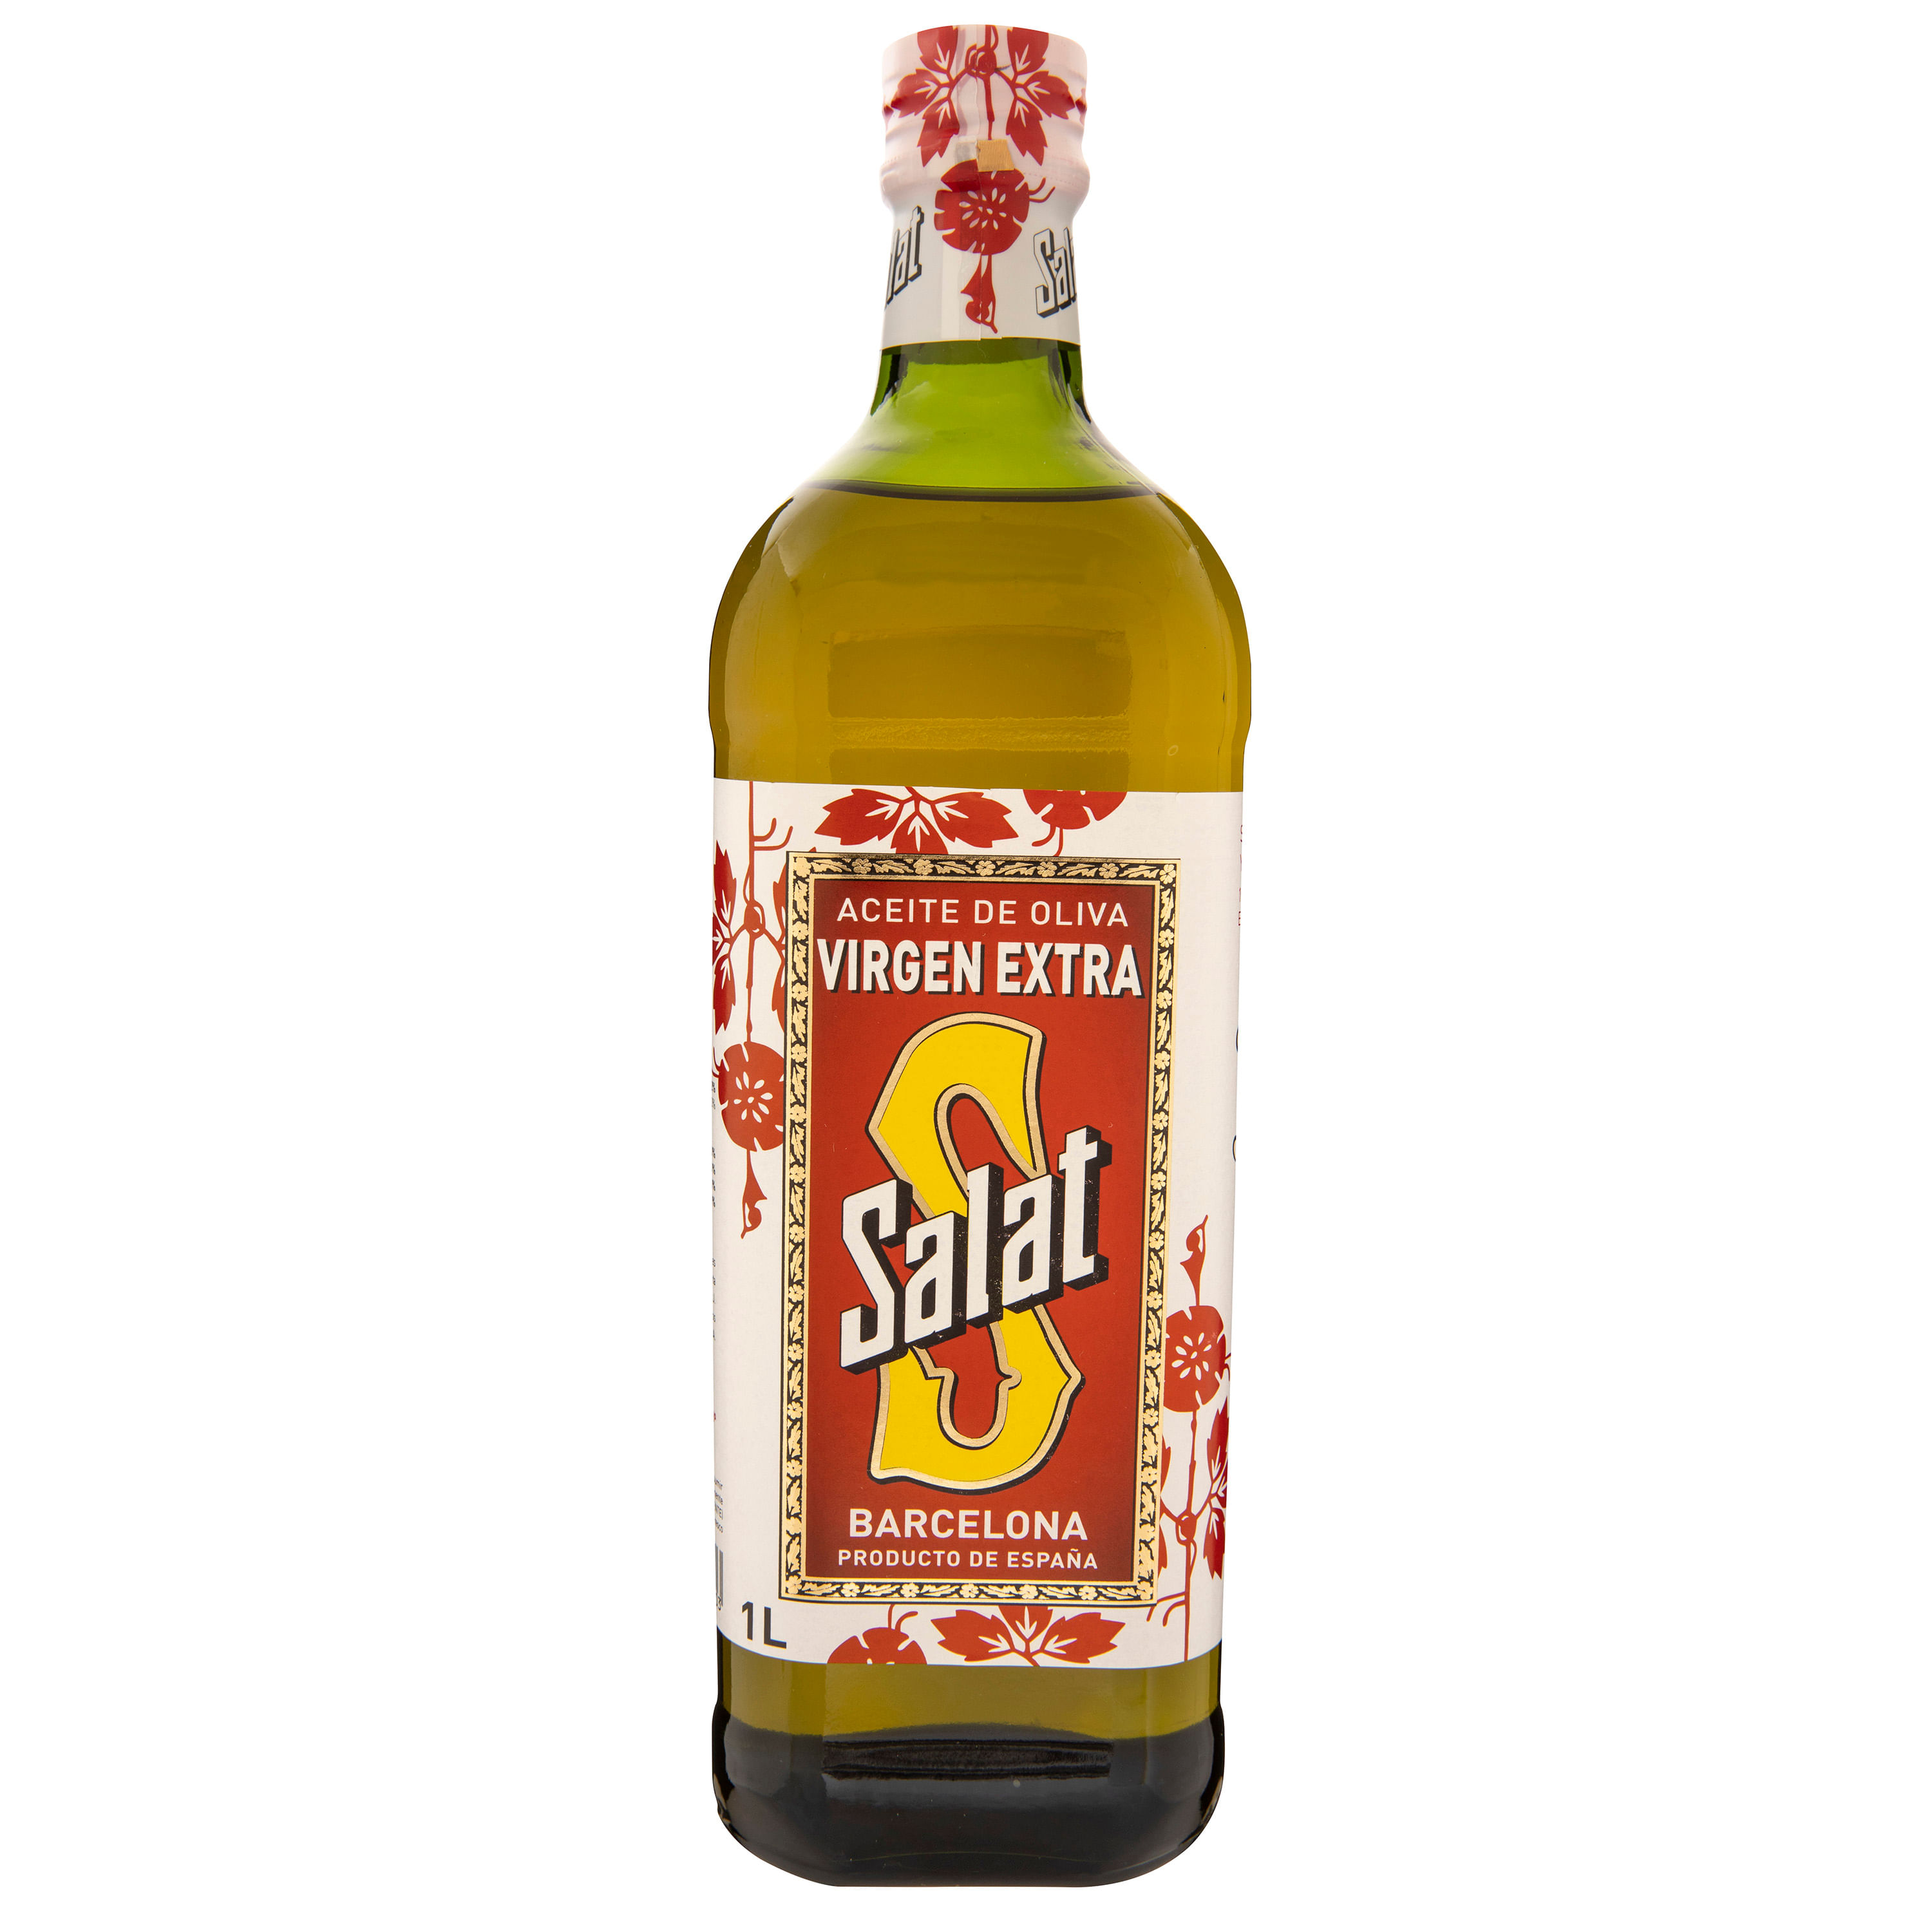 Aceite-Salat-Oliva-Extra-Virgen-1000ml-Aceite-Salat-Oliva-Extra-Virgen-1000Ml-1-32840